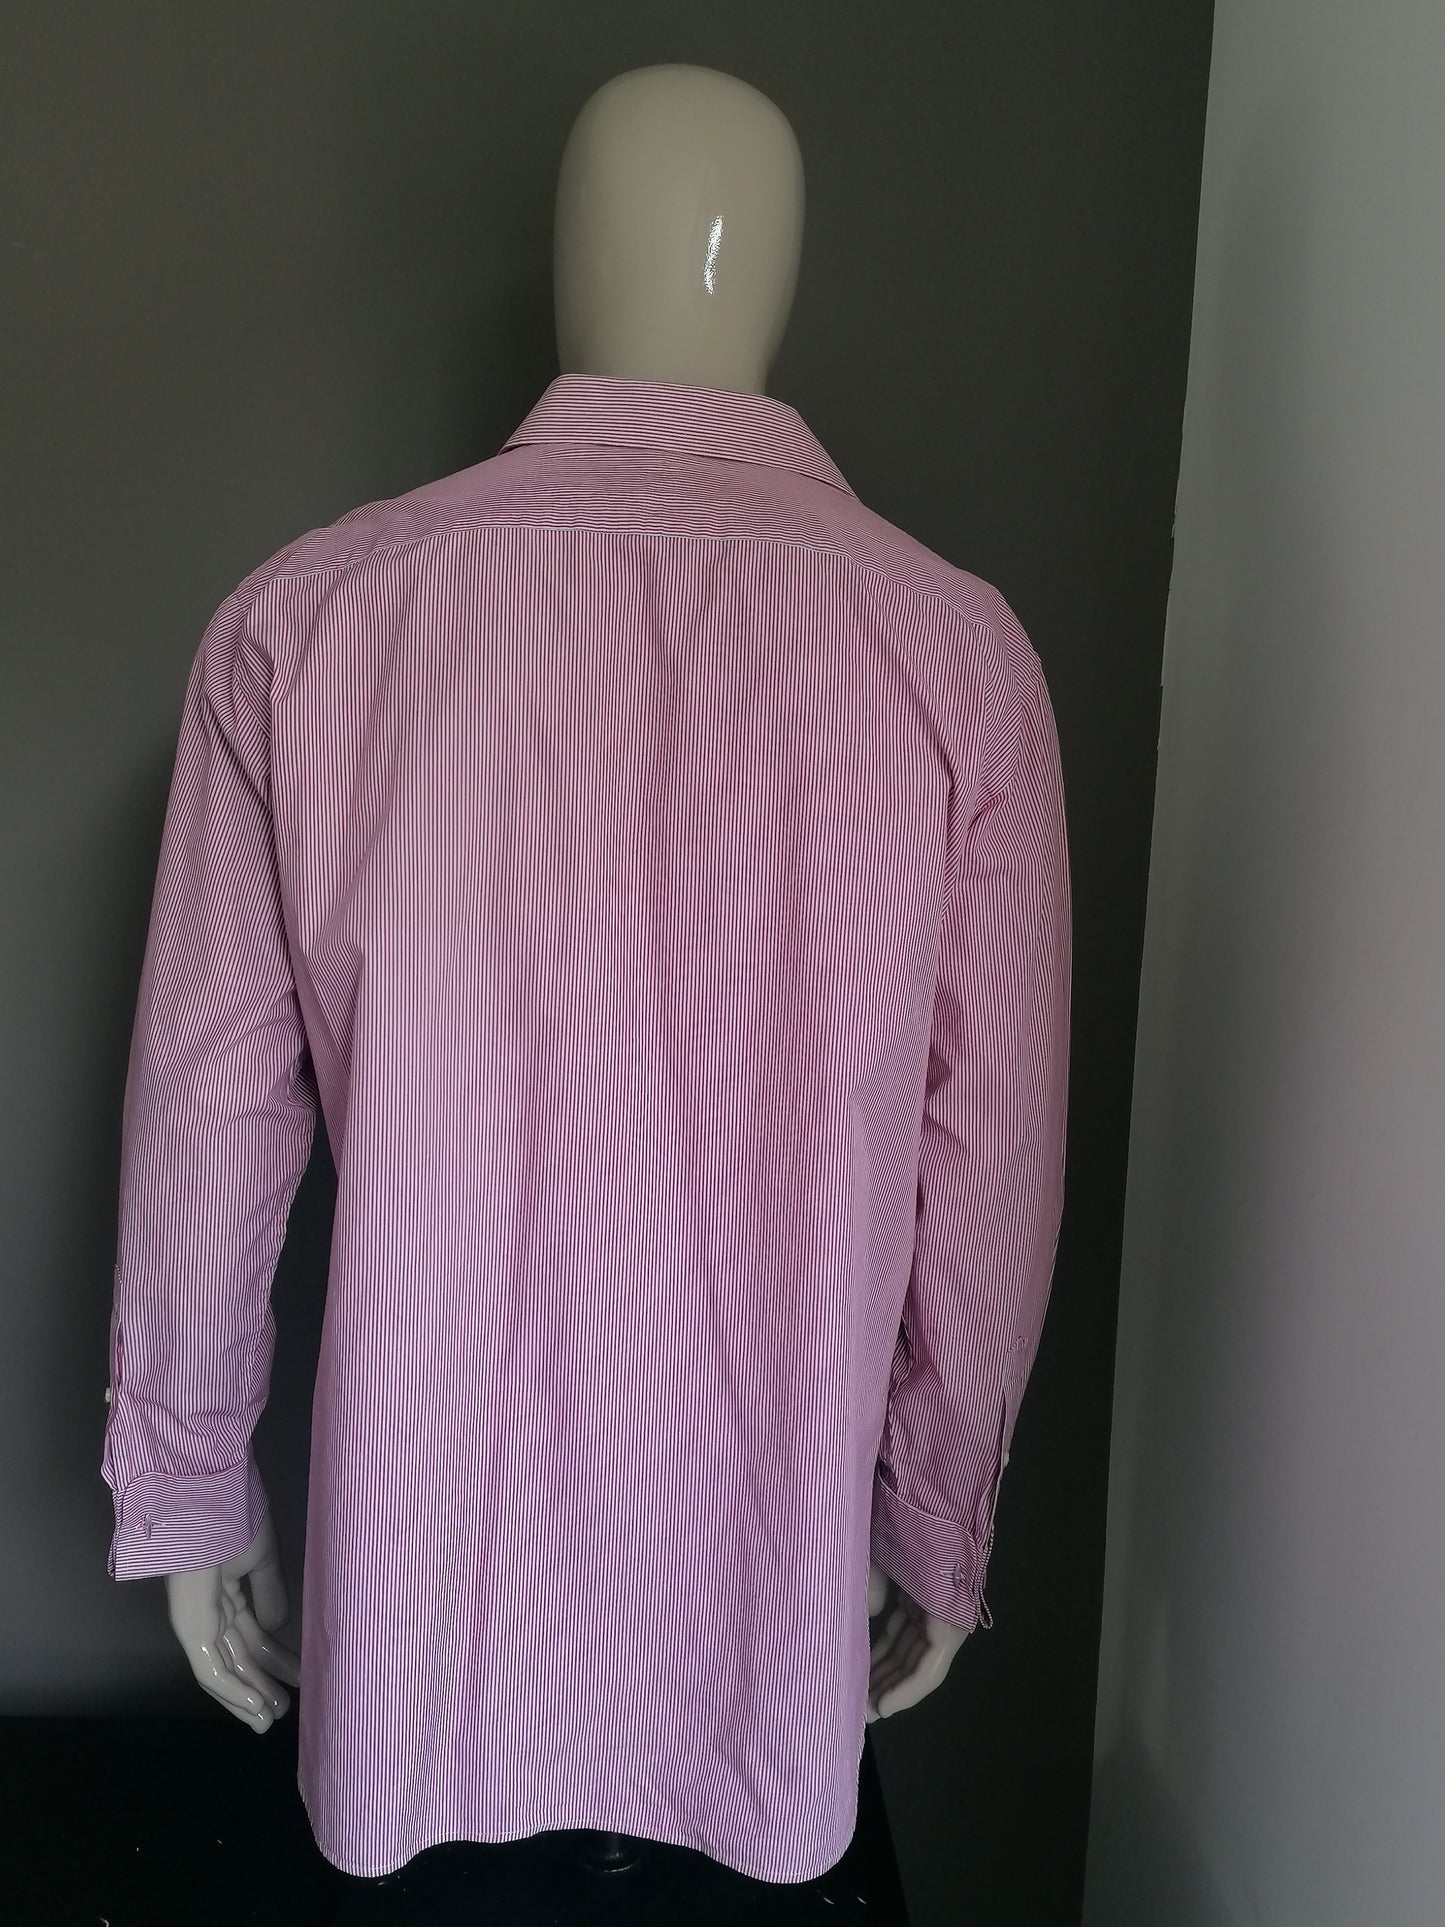 Camisa de Lipman & Sons. Rayado rojo rayado. Tamaño 45 / xxl / 2xl. Tipo de nudo de manguito. "Hilo de dos veces".